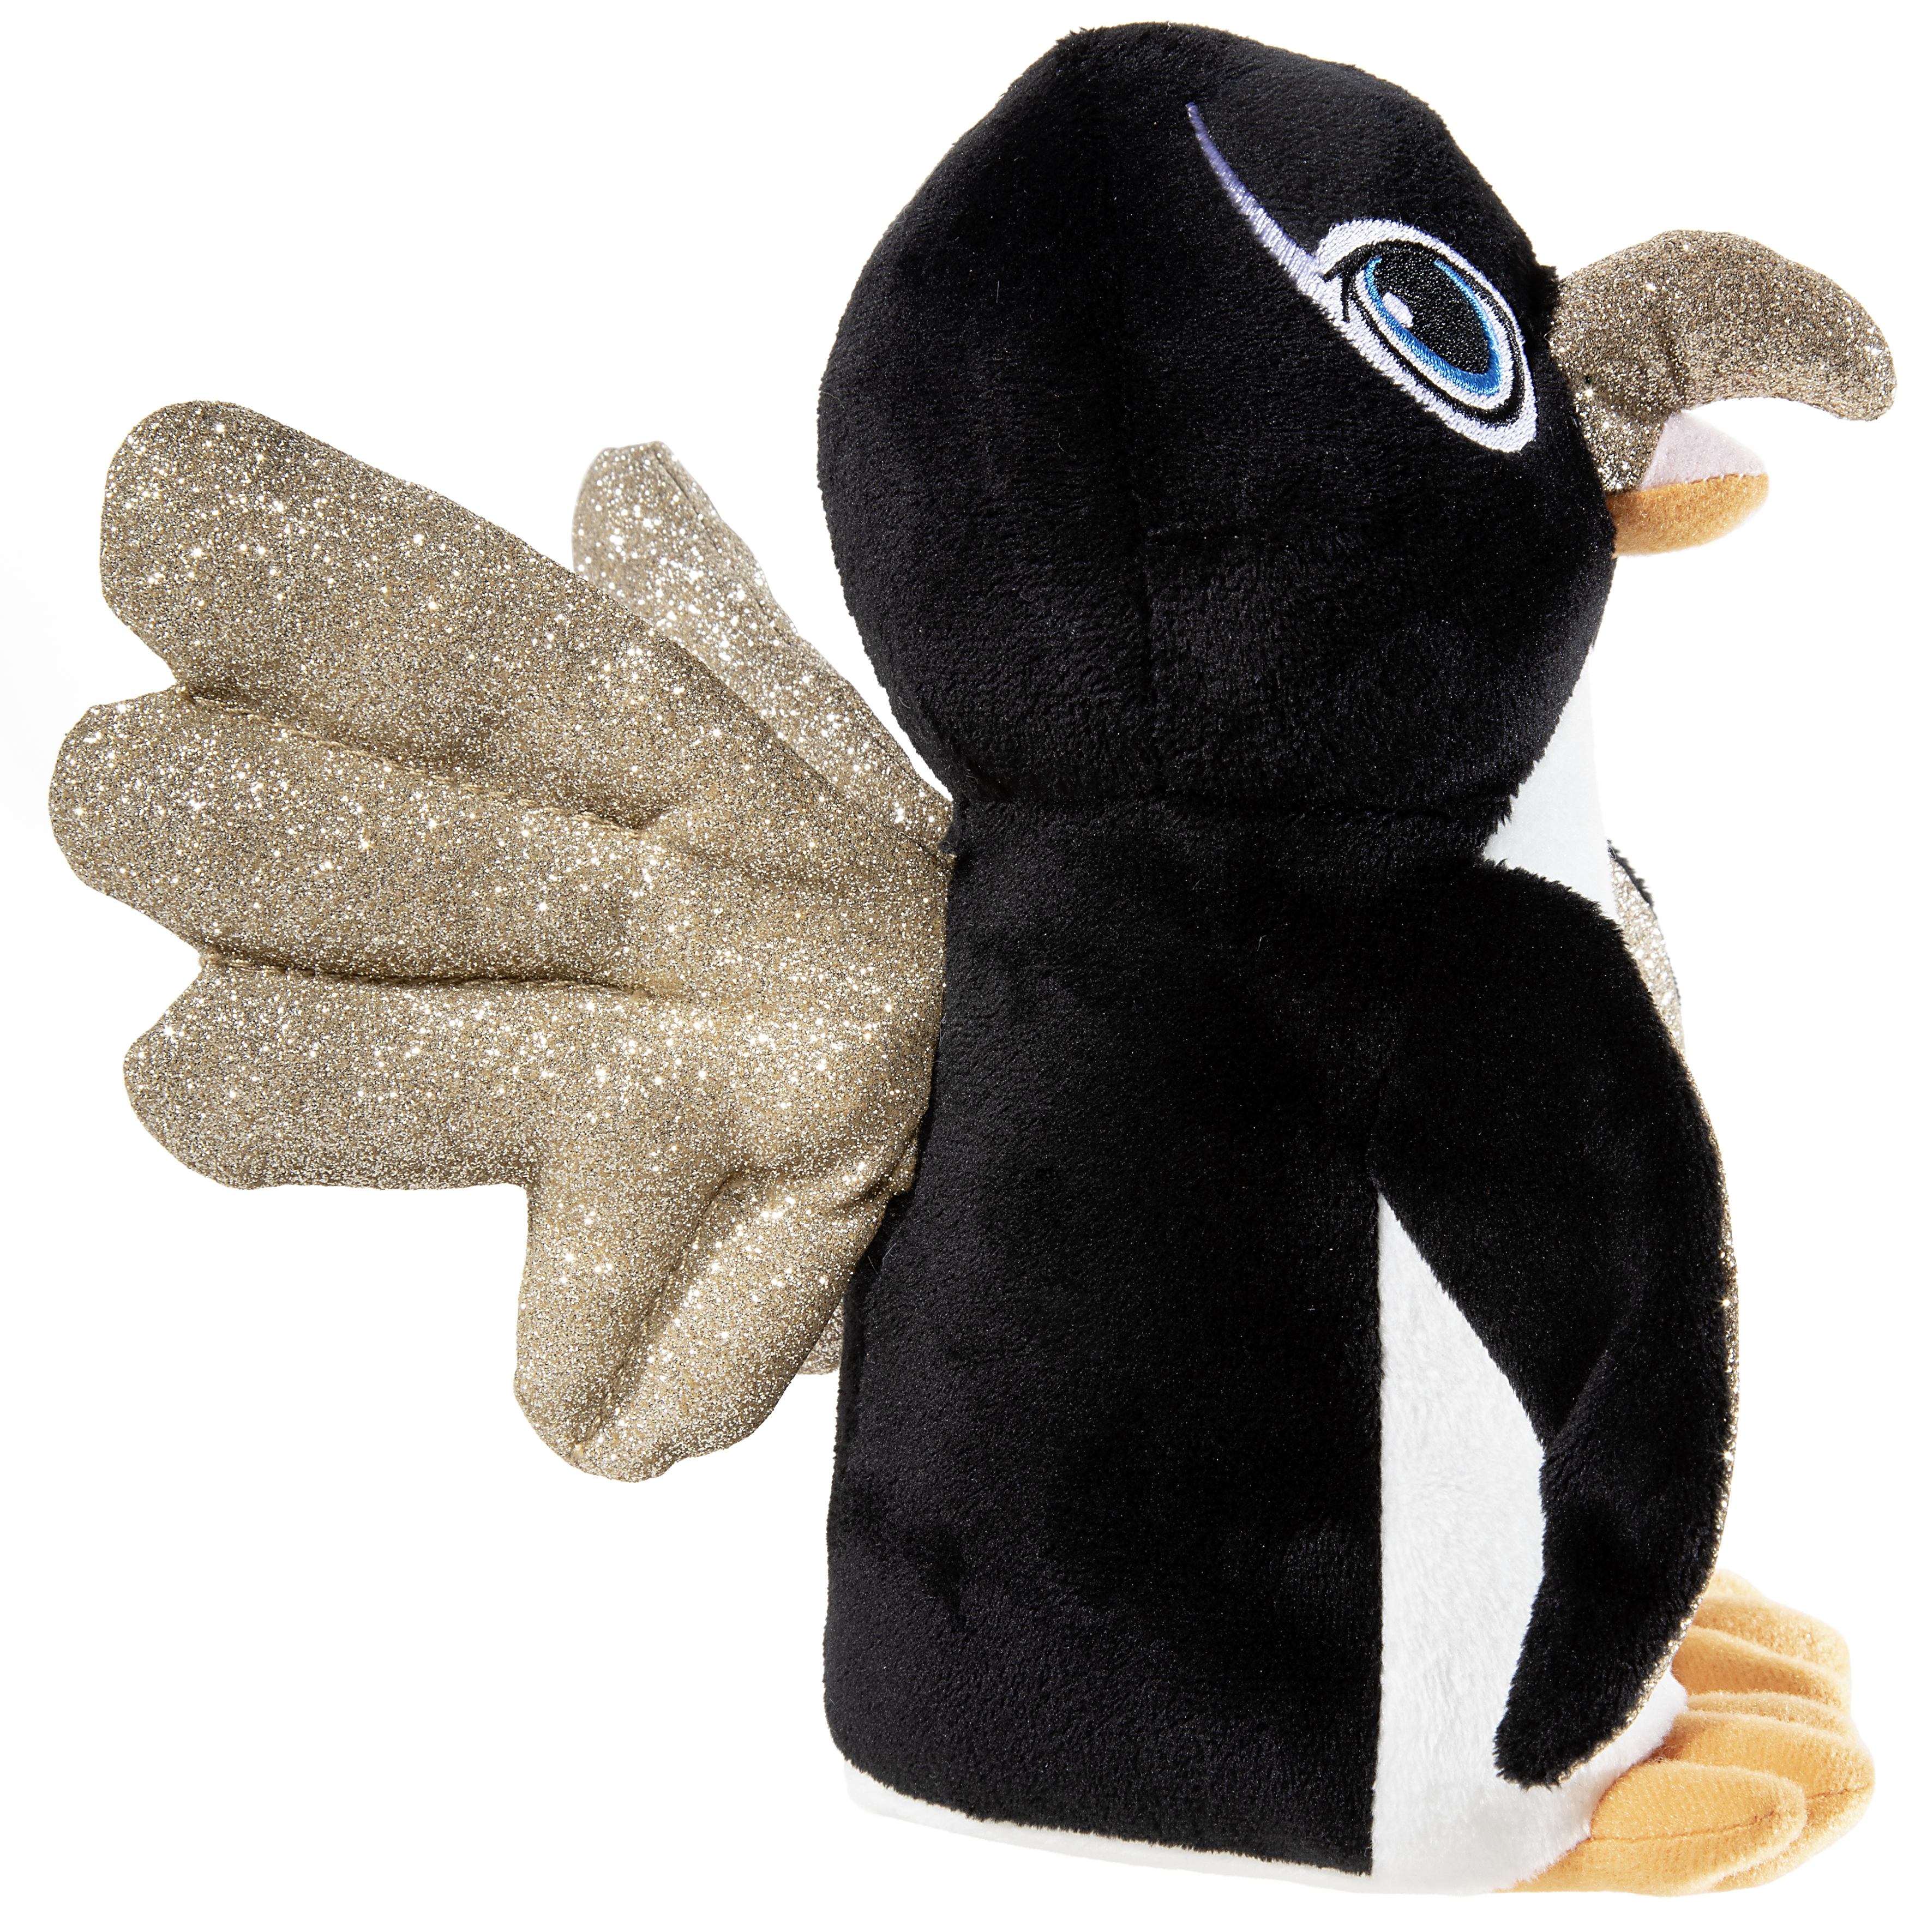 Heunec Pinguin mit goldenen Flügeln aus der Wings Serie in 25cm Größe seitlich